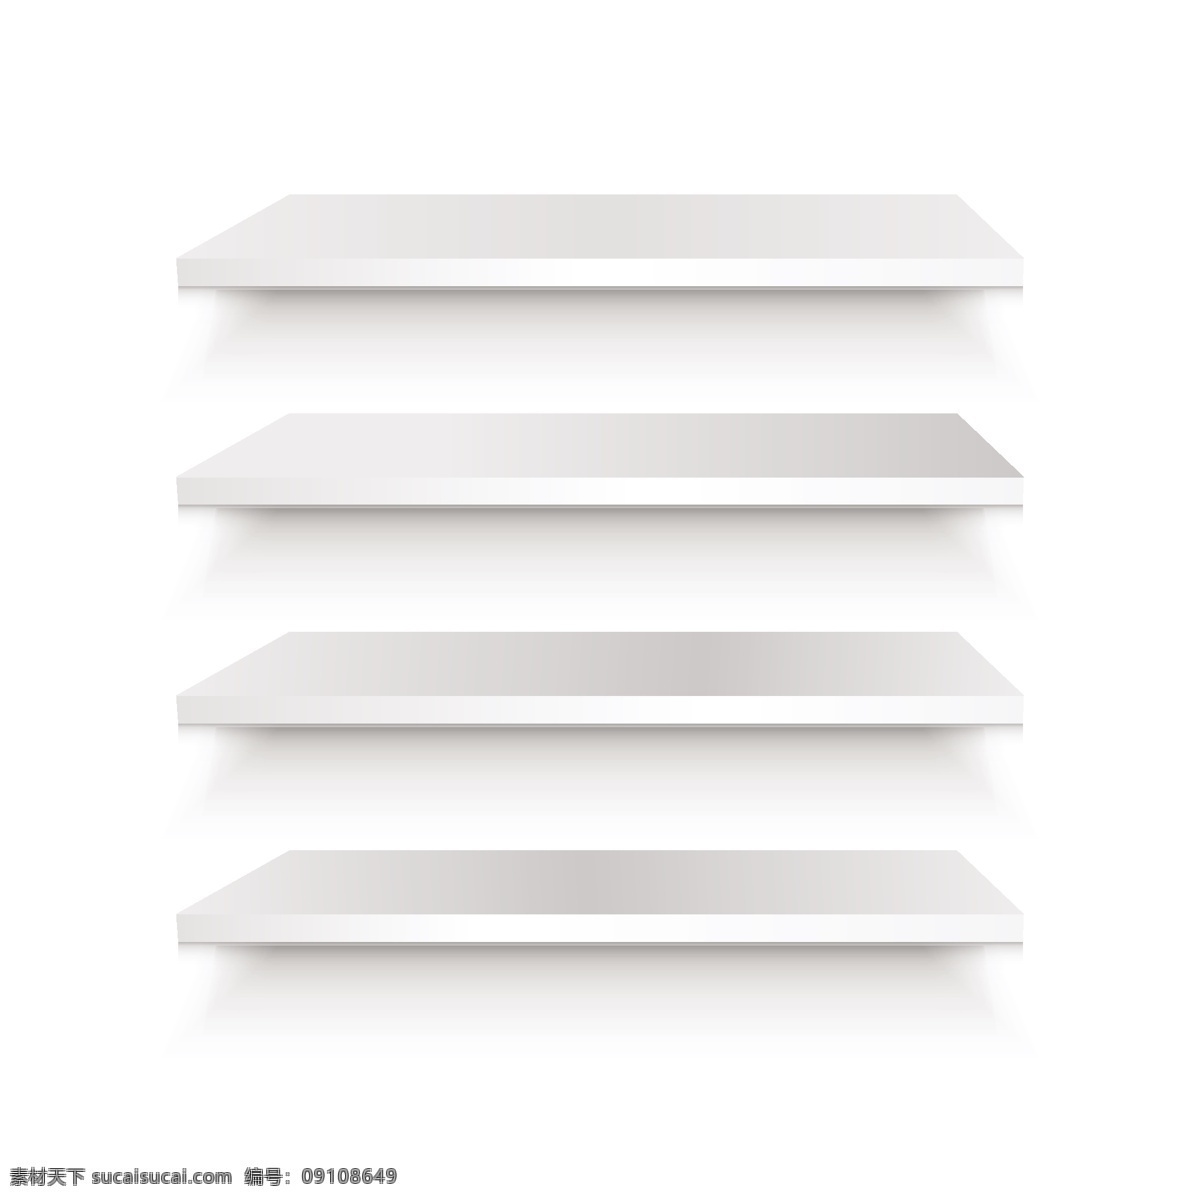 书架 3d 设置 背景 抽象的图形 室内 货架 白色的书架 元 展览 地点 对象 现实 阐述 简单 搁置